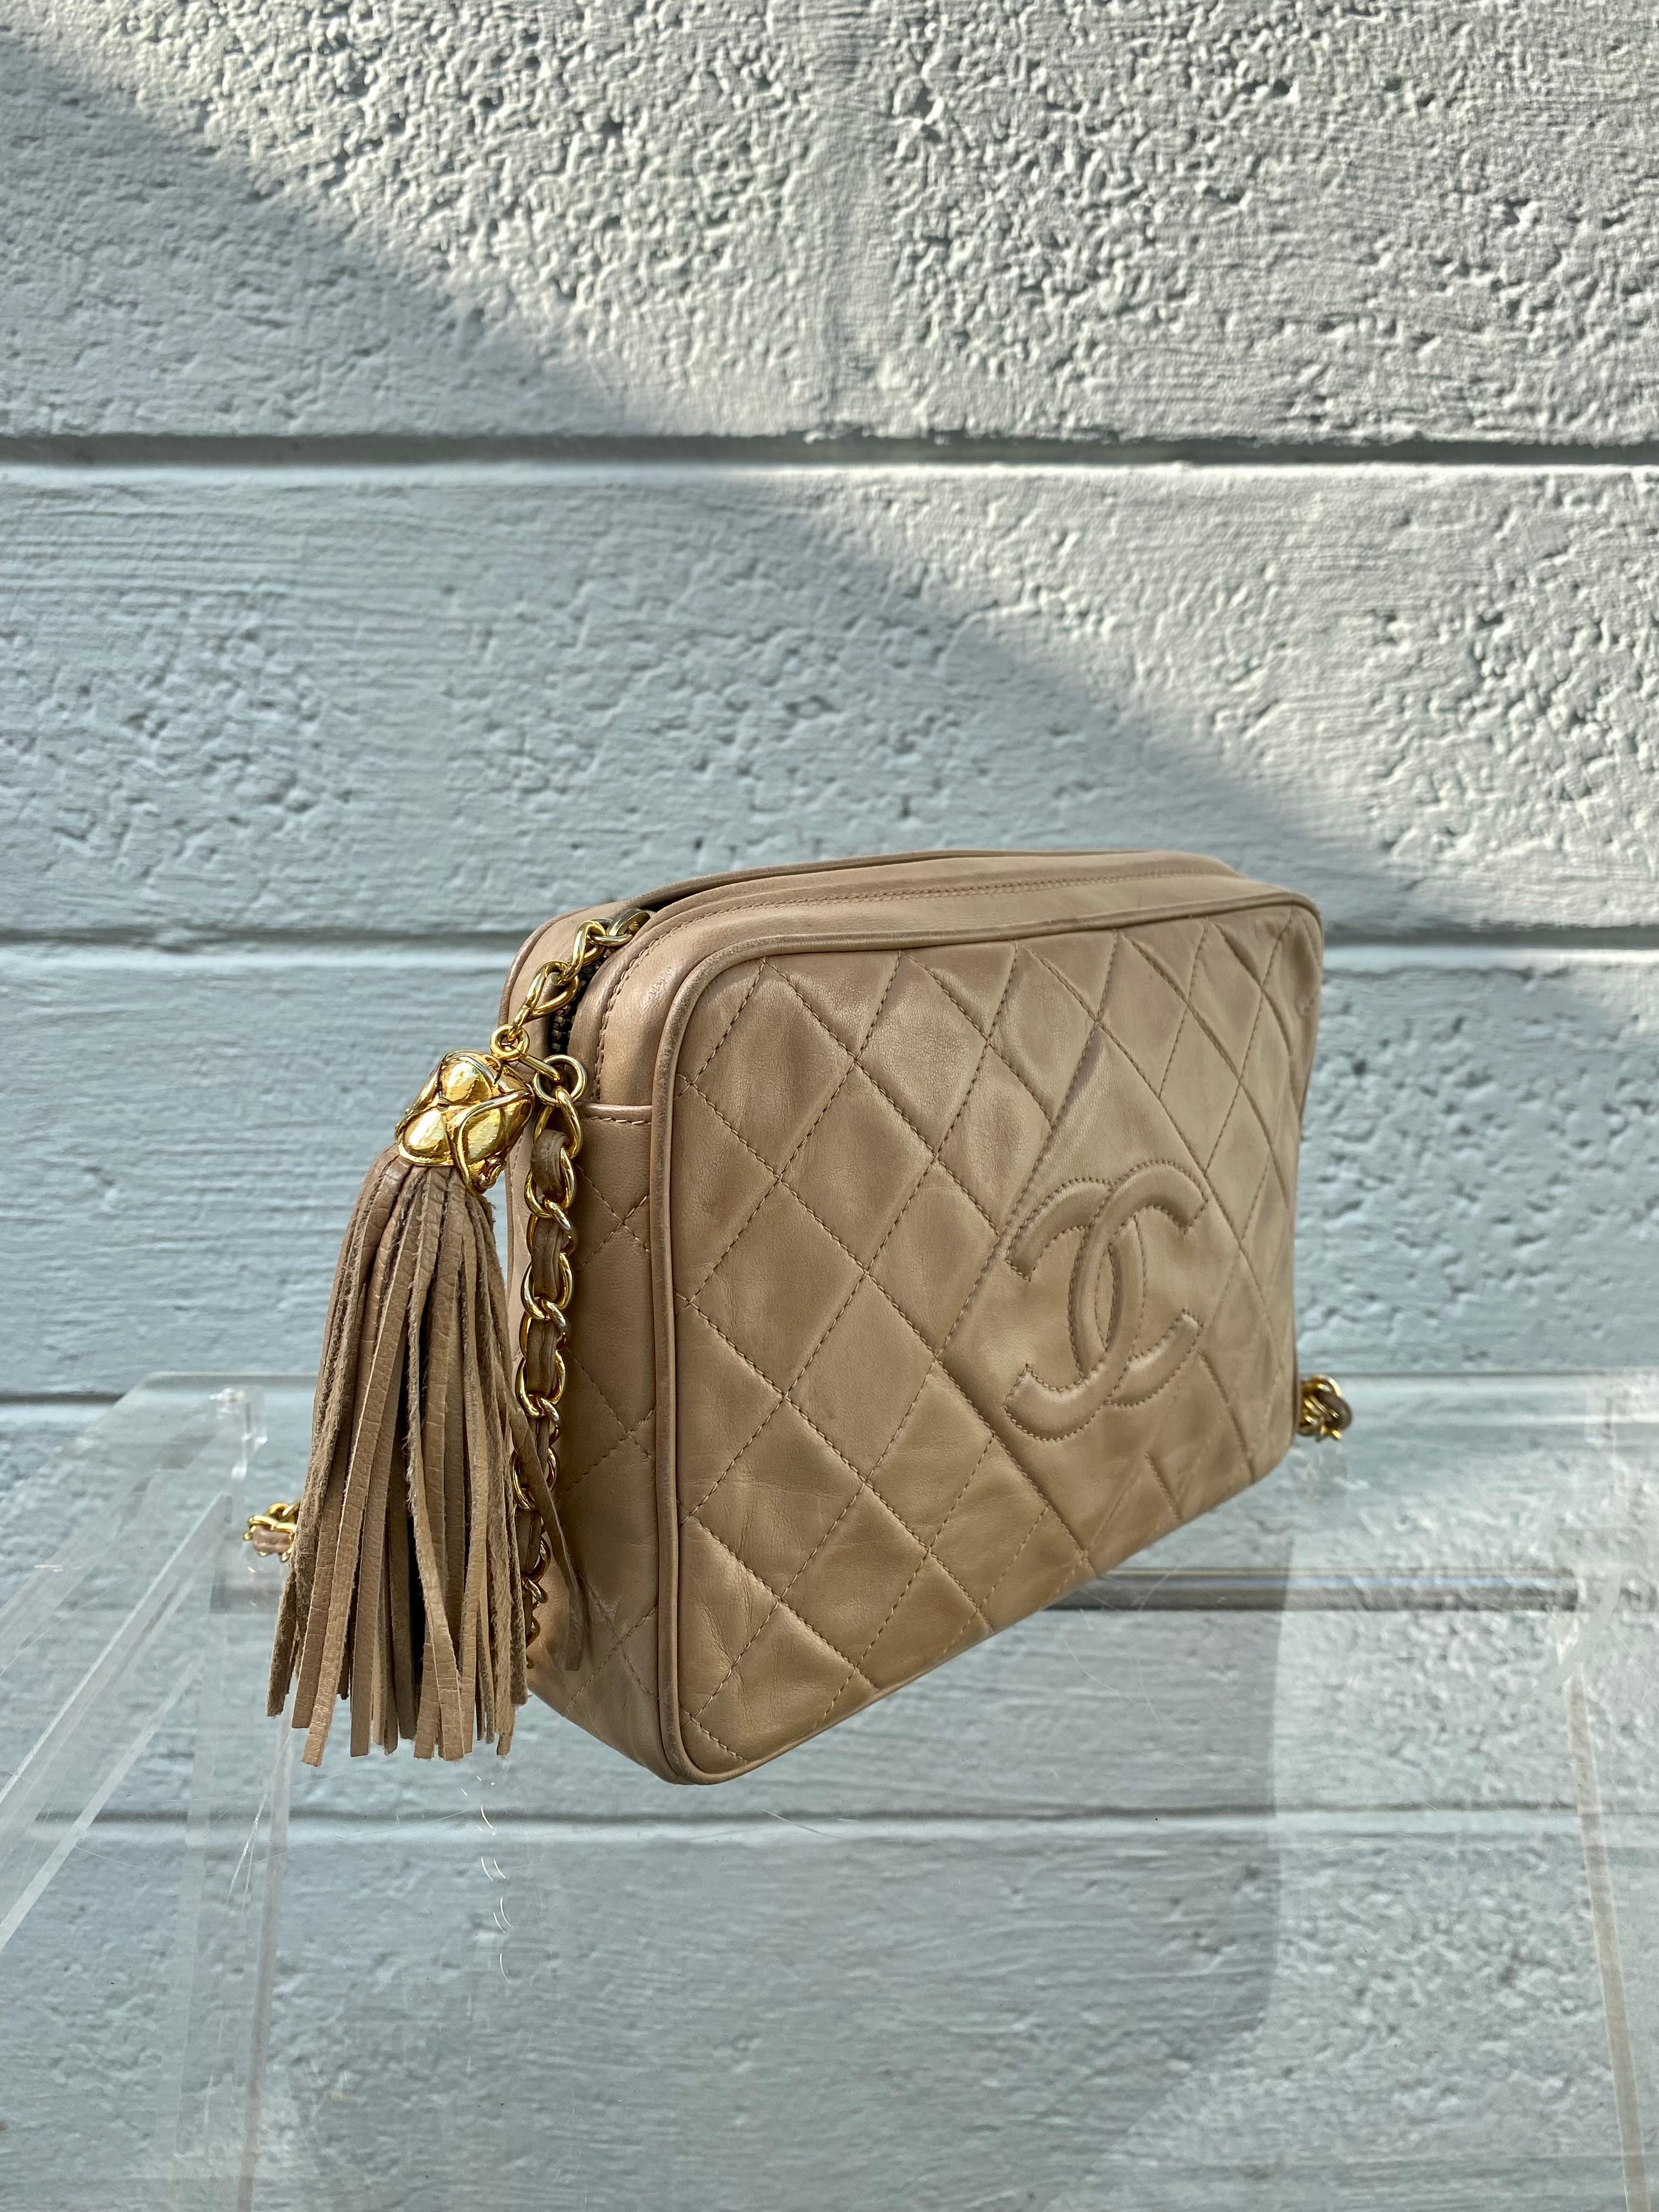 Das Nonplusultra in der Herstellung von Handtaschen, luxuriöse Handwerkskunst. Das ikonische Haus Chanel versorgt uns immer mit zeitlosen und klassischen Stücken. Die seltene Tasche verleiht der zeitlosen Kreation ein neues Maß an Raffinesse und